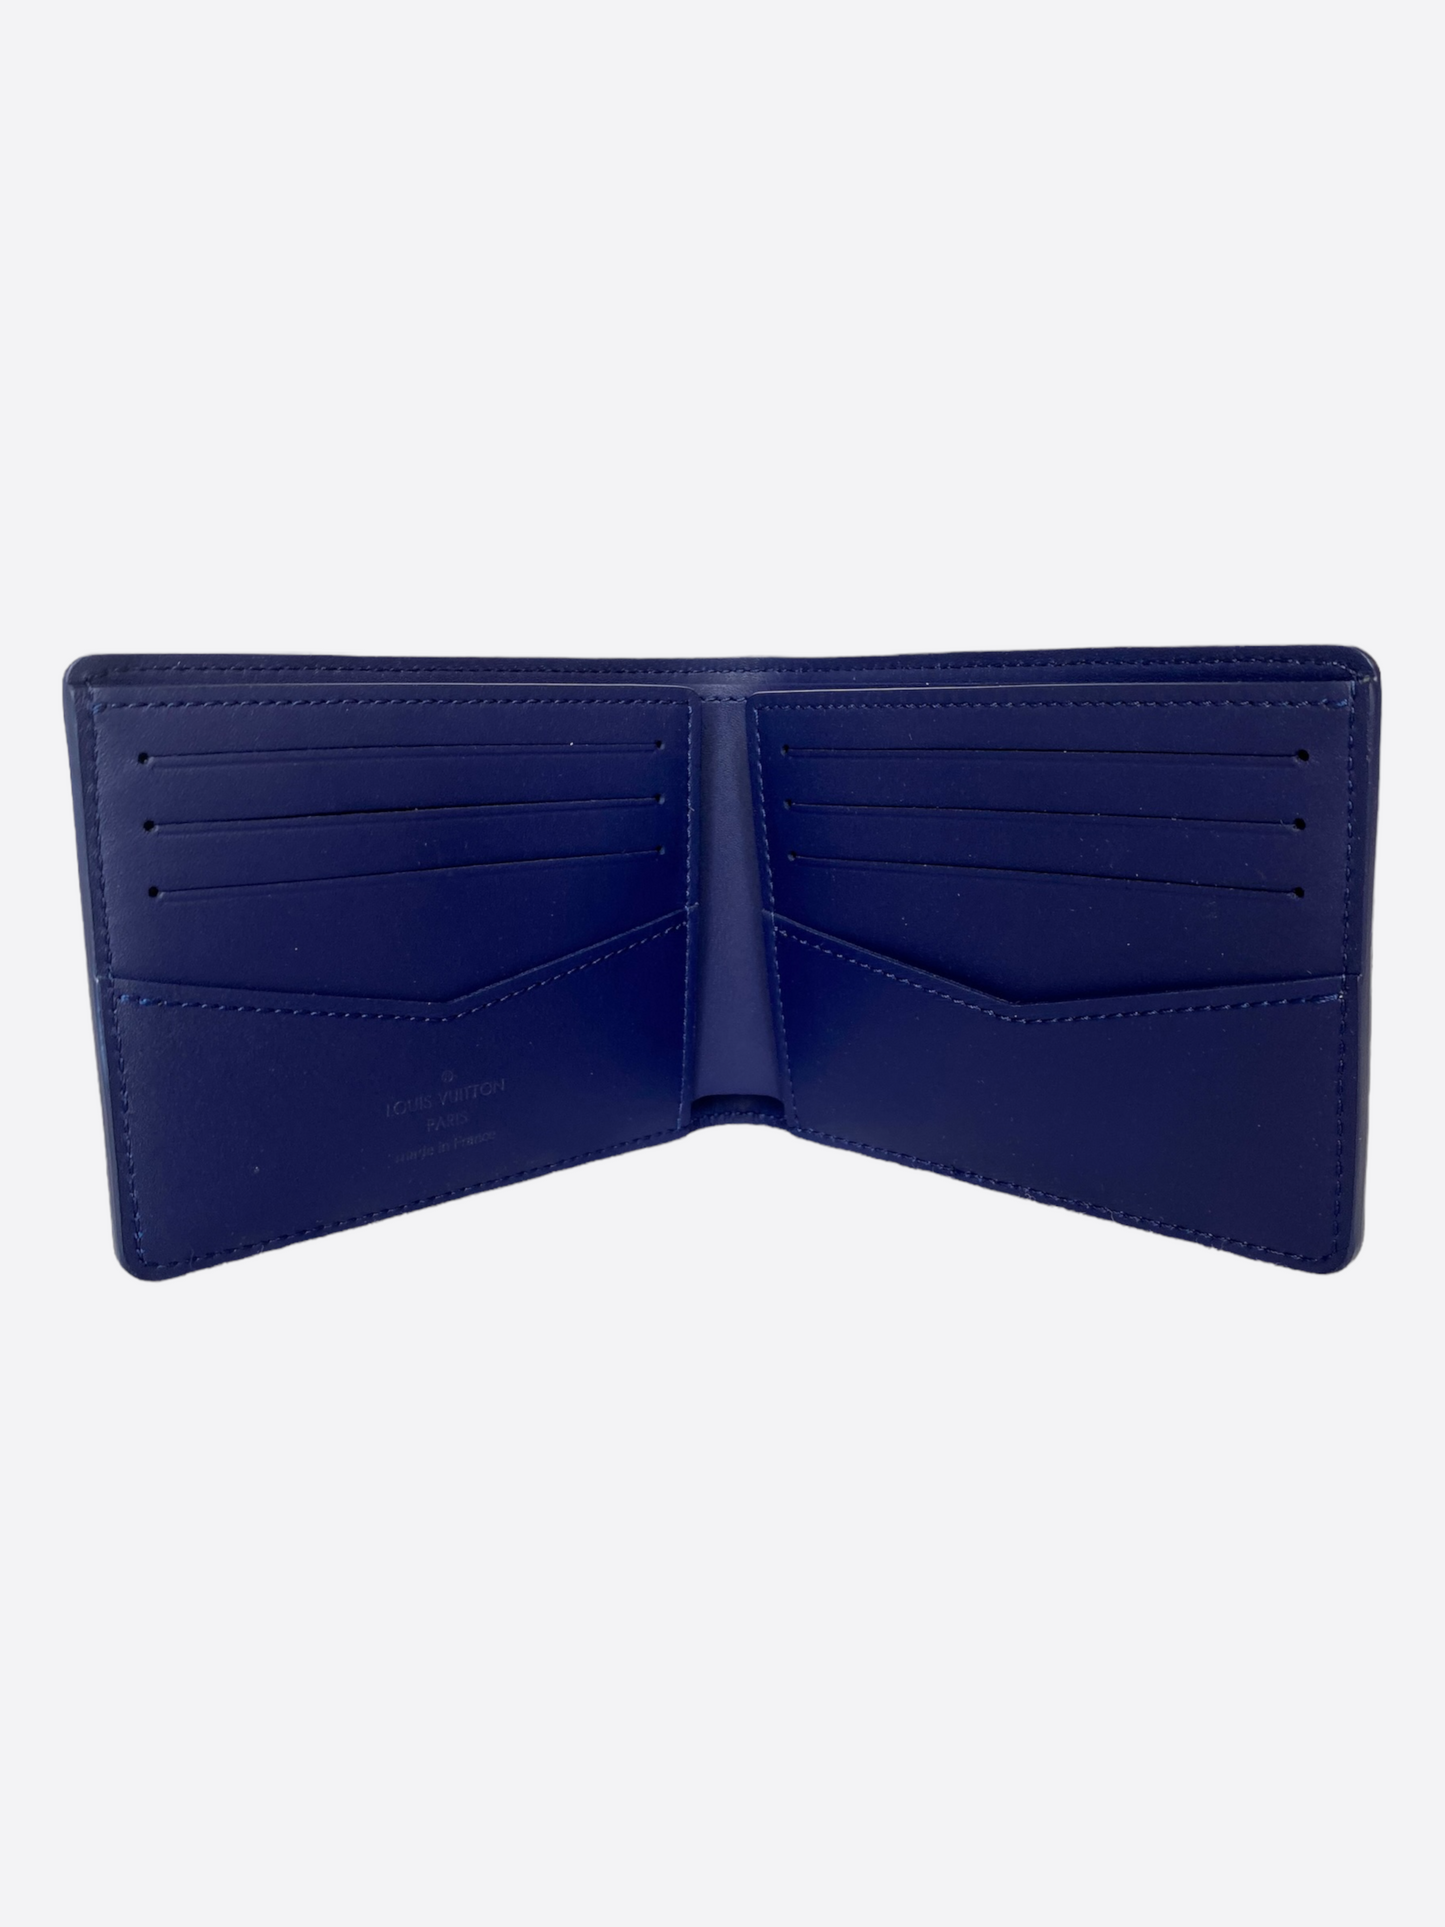 Shop authentic Louis Vuitton Blue Monogram Bandana Wallet at revogue for  just USD 820.00